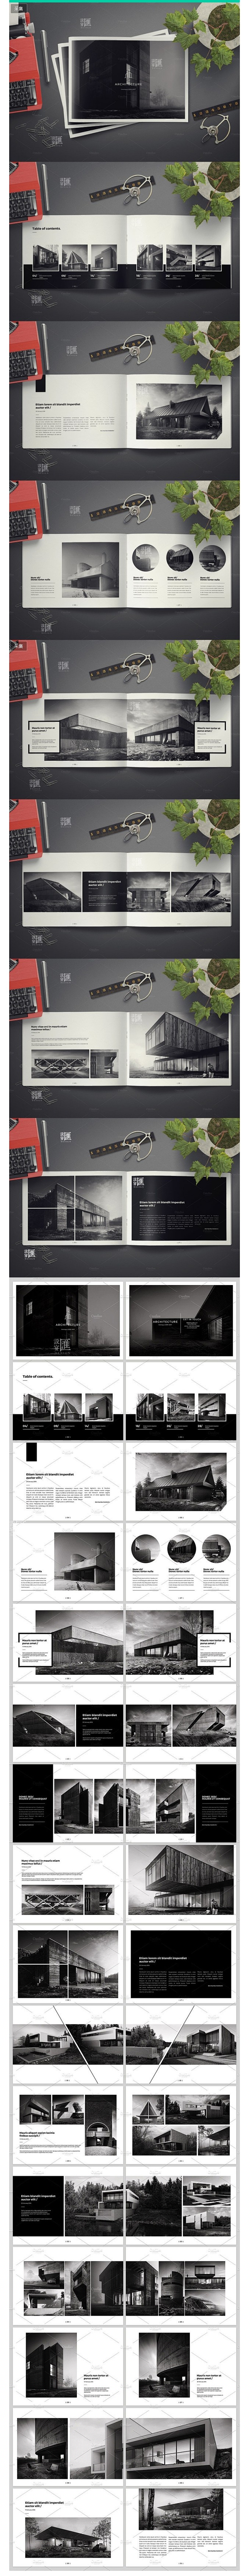 国外建筑作品摄影展示画册封面装帧内页排版...